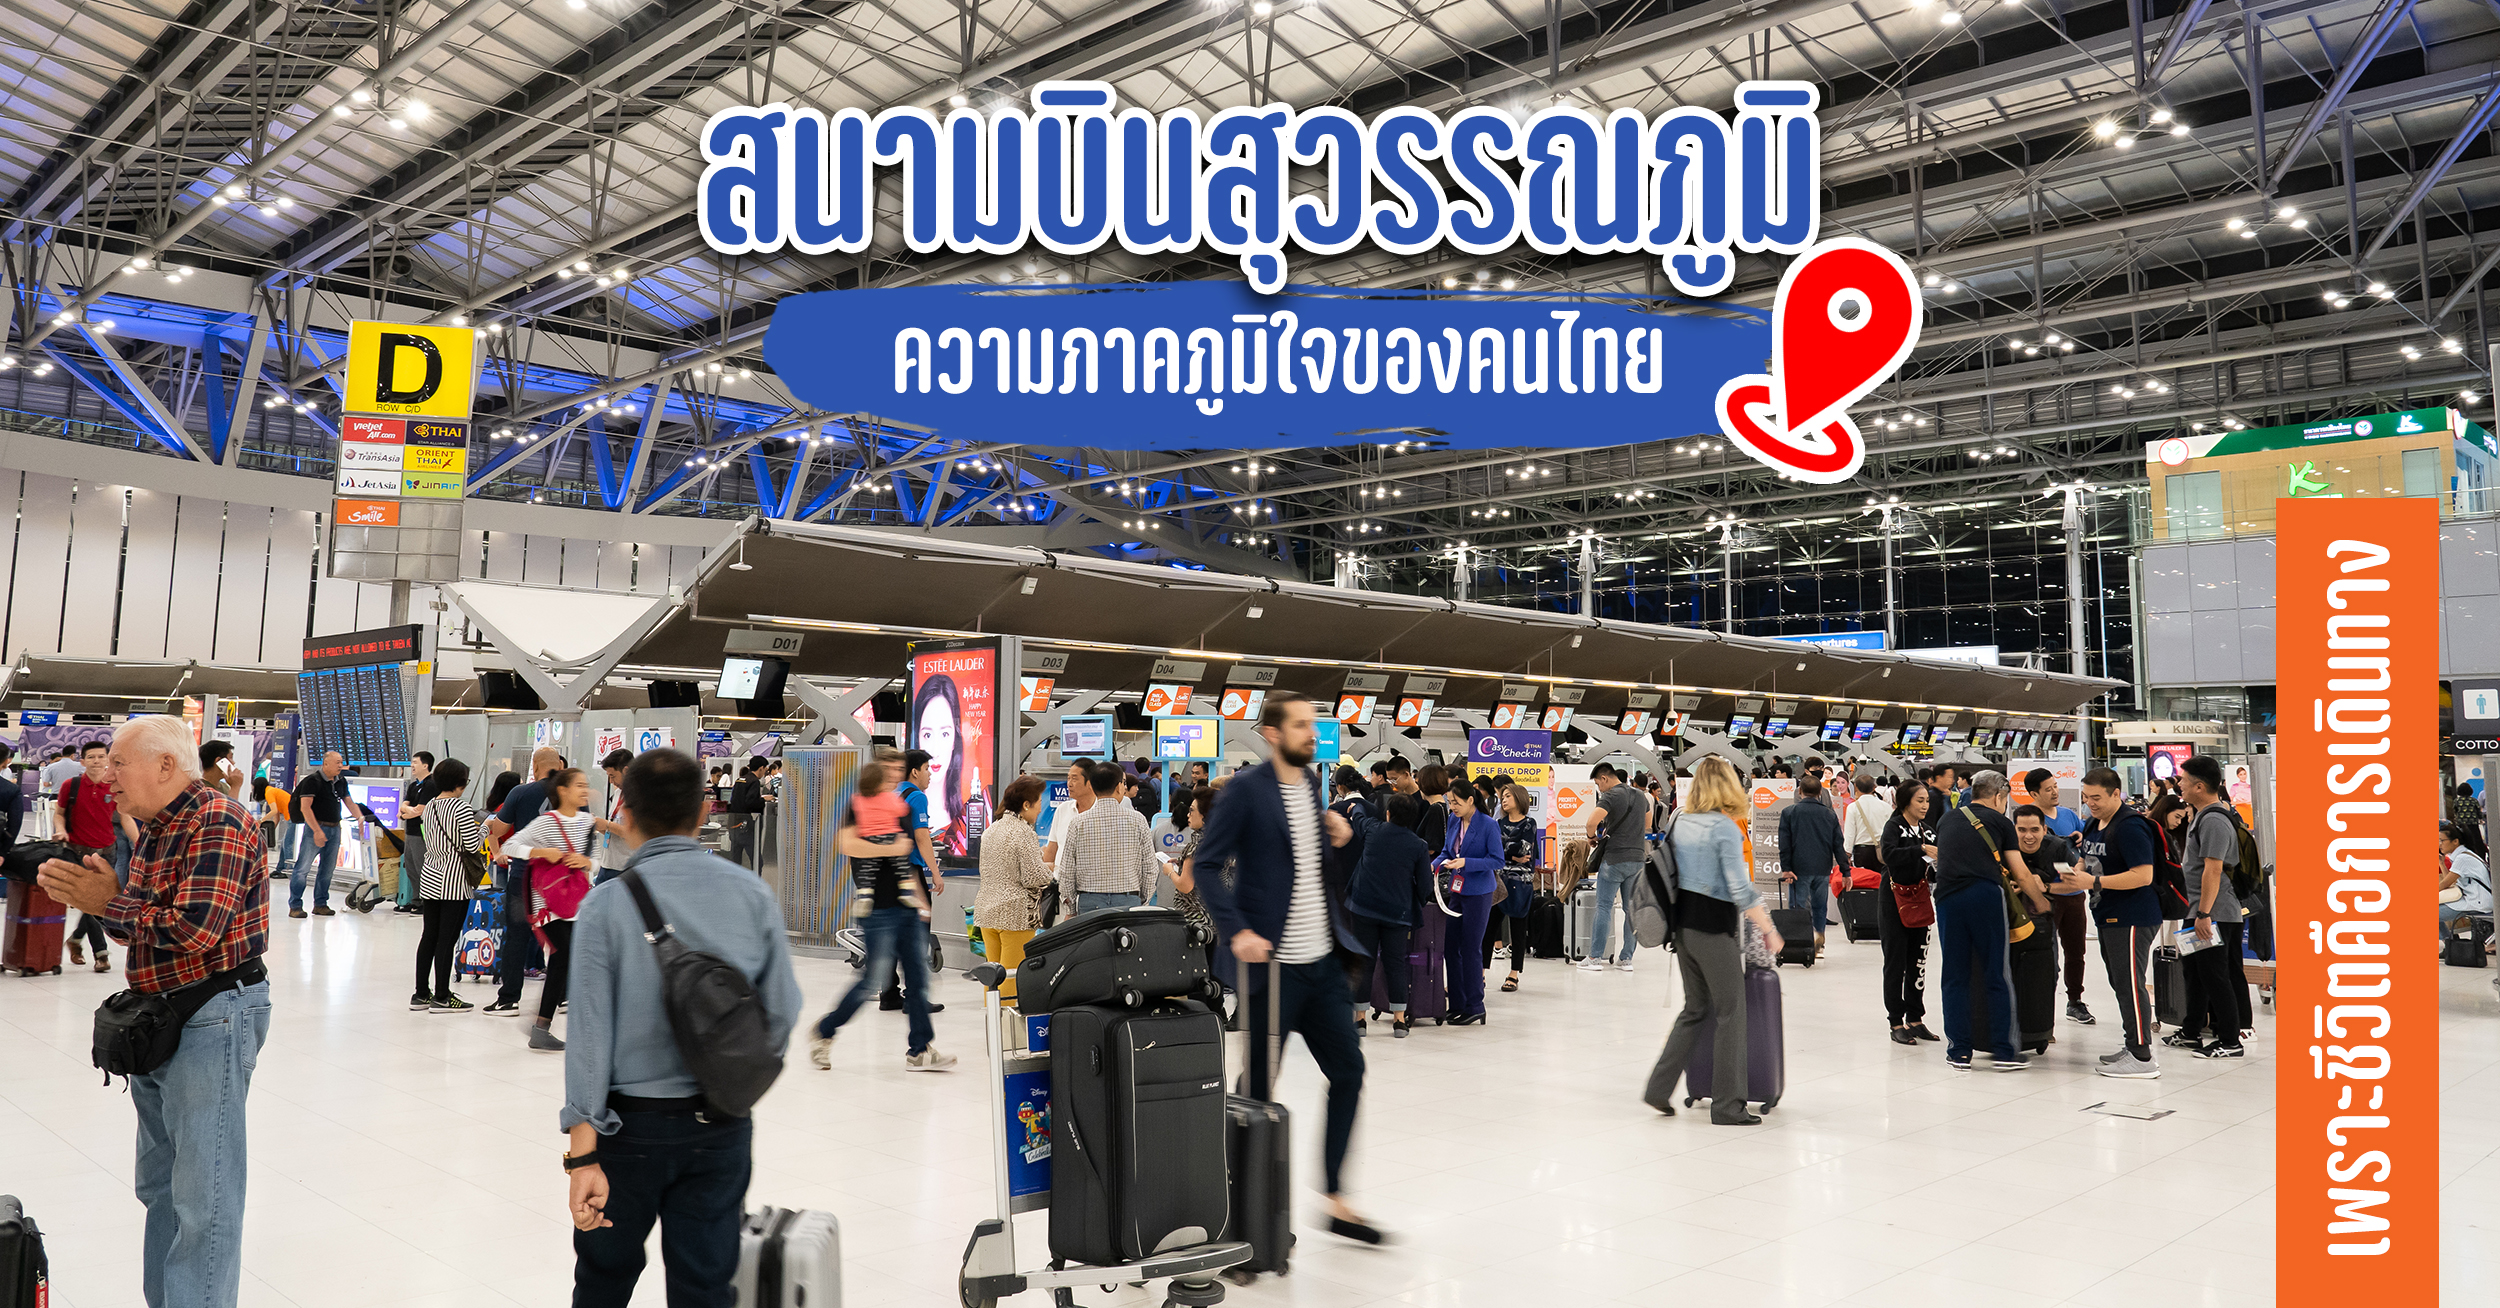 สนามบินสุวรรณภูมิ เป็นความภาคภูมิใจของคนไทยอย่างหนึ่ง ที่คนไทยได้มีสนามบินคุณภาพระดับโลกได้ใช้